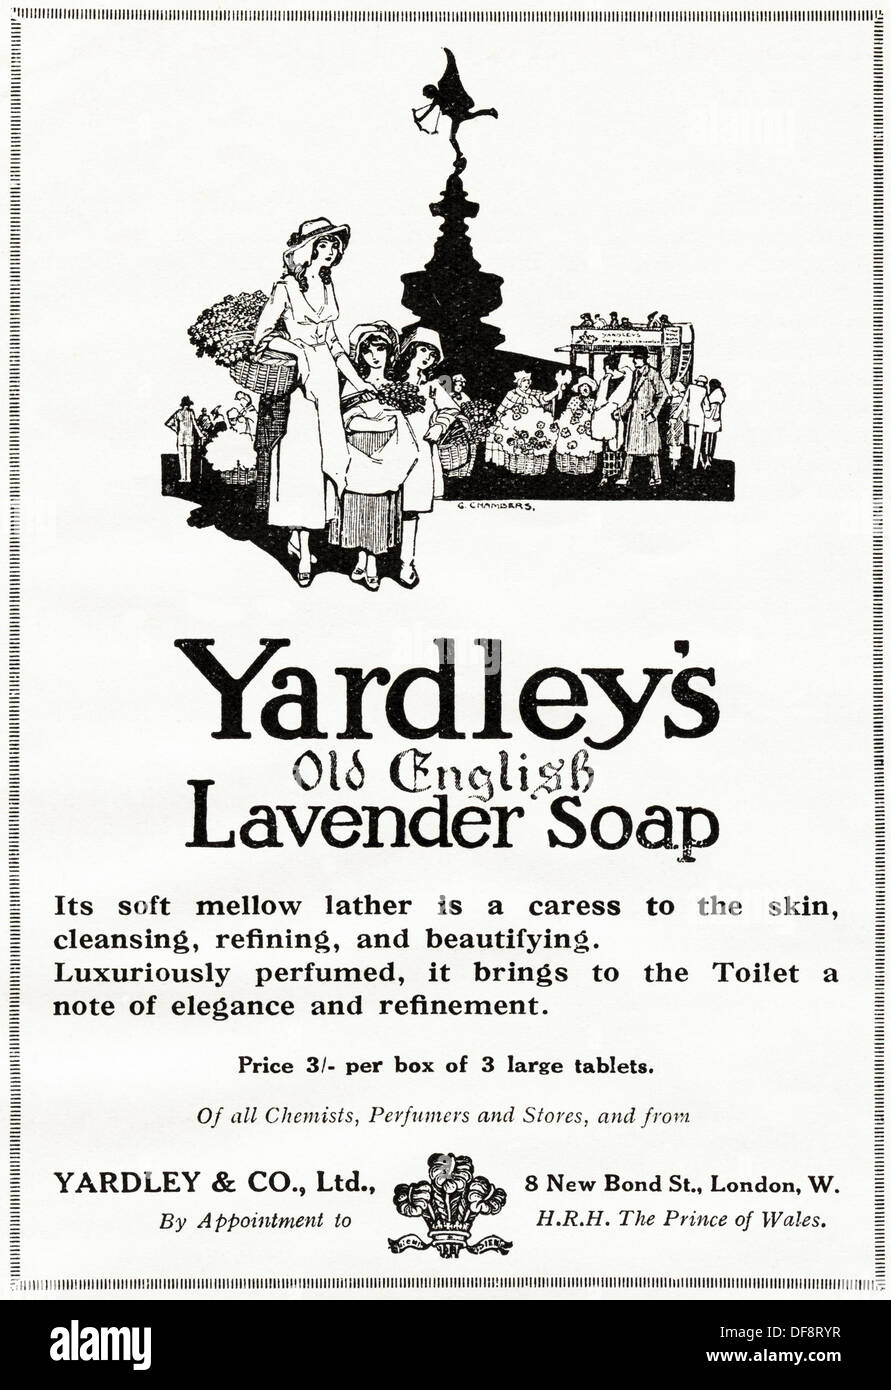 Original 1920er Jahre Werbung Werbung YARDLEYs alten englischen Lavendel Seife, Verbraucher Magazin Anzeige ca. 1924 Stockfoto